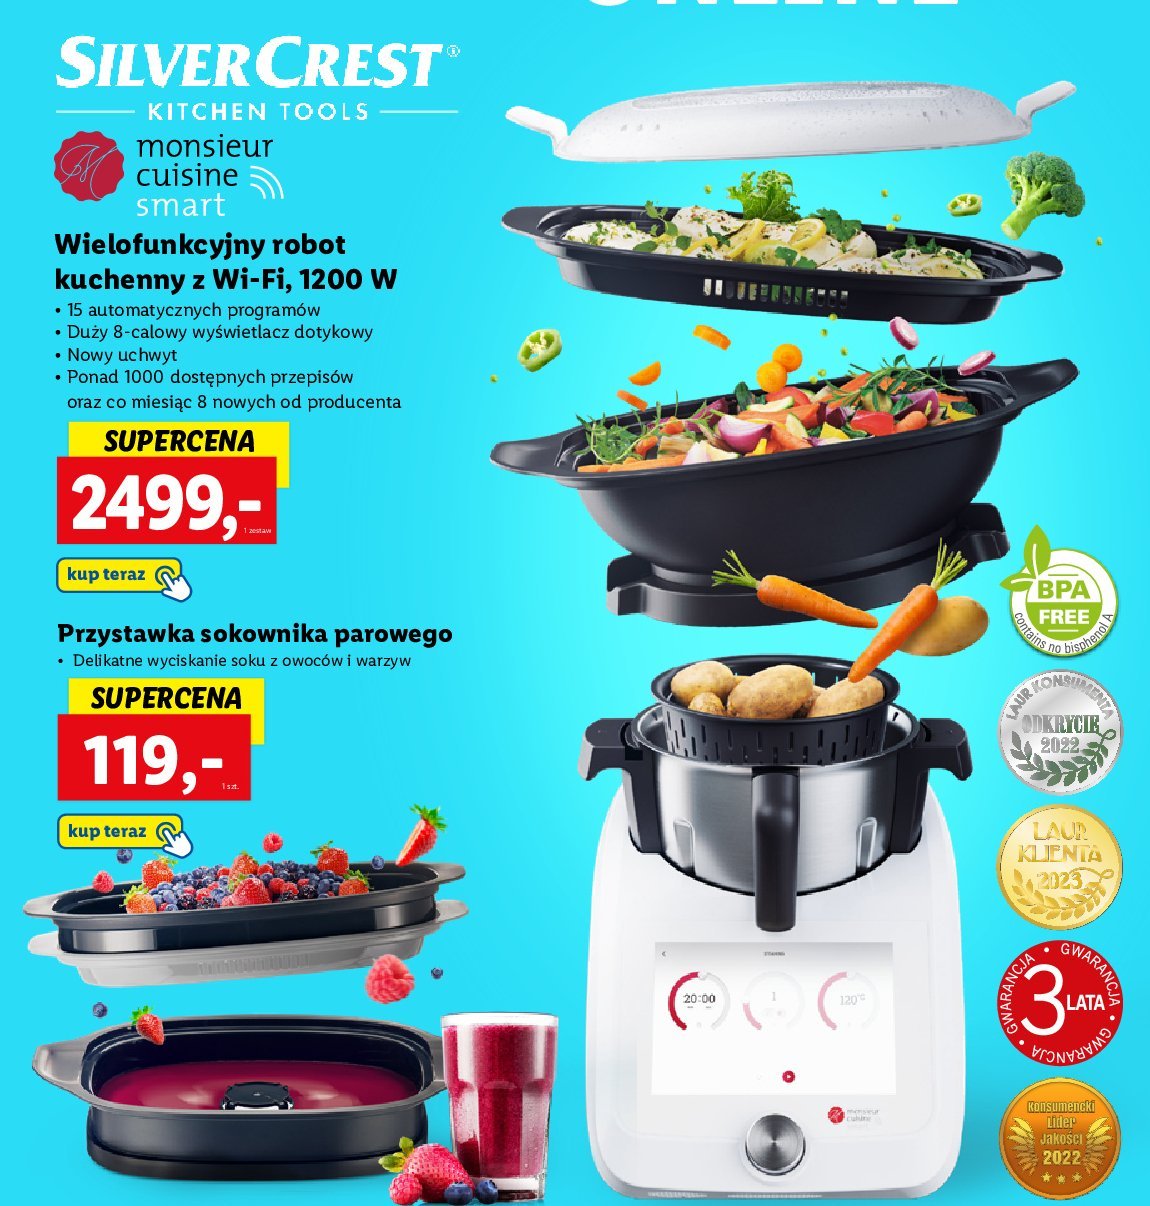 Wielofuncyjny robot kuchenny Silvercrest promocja